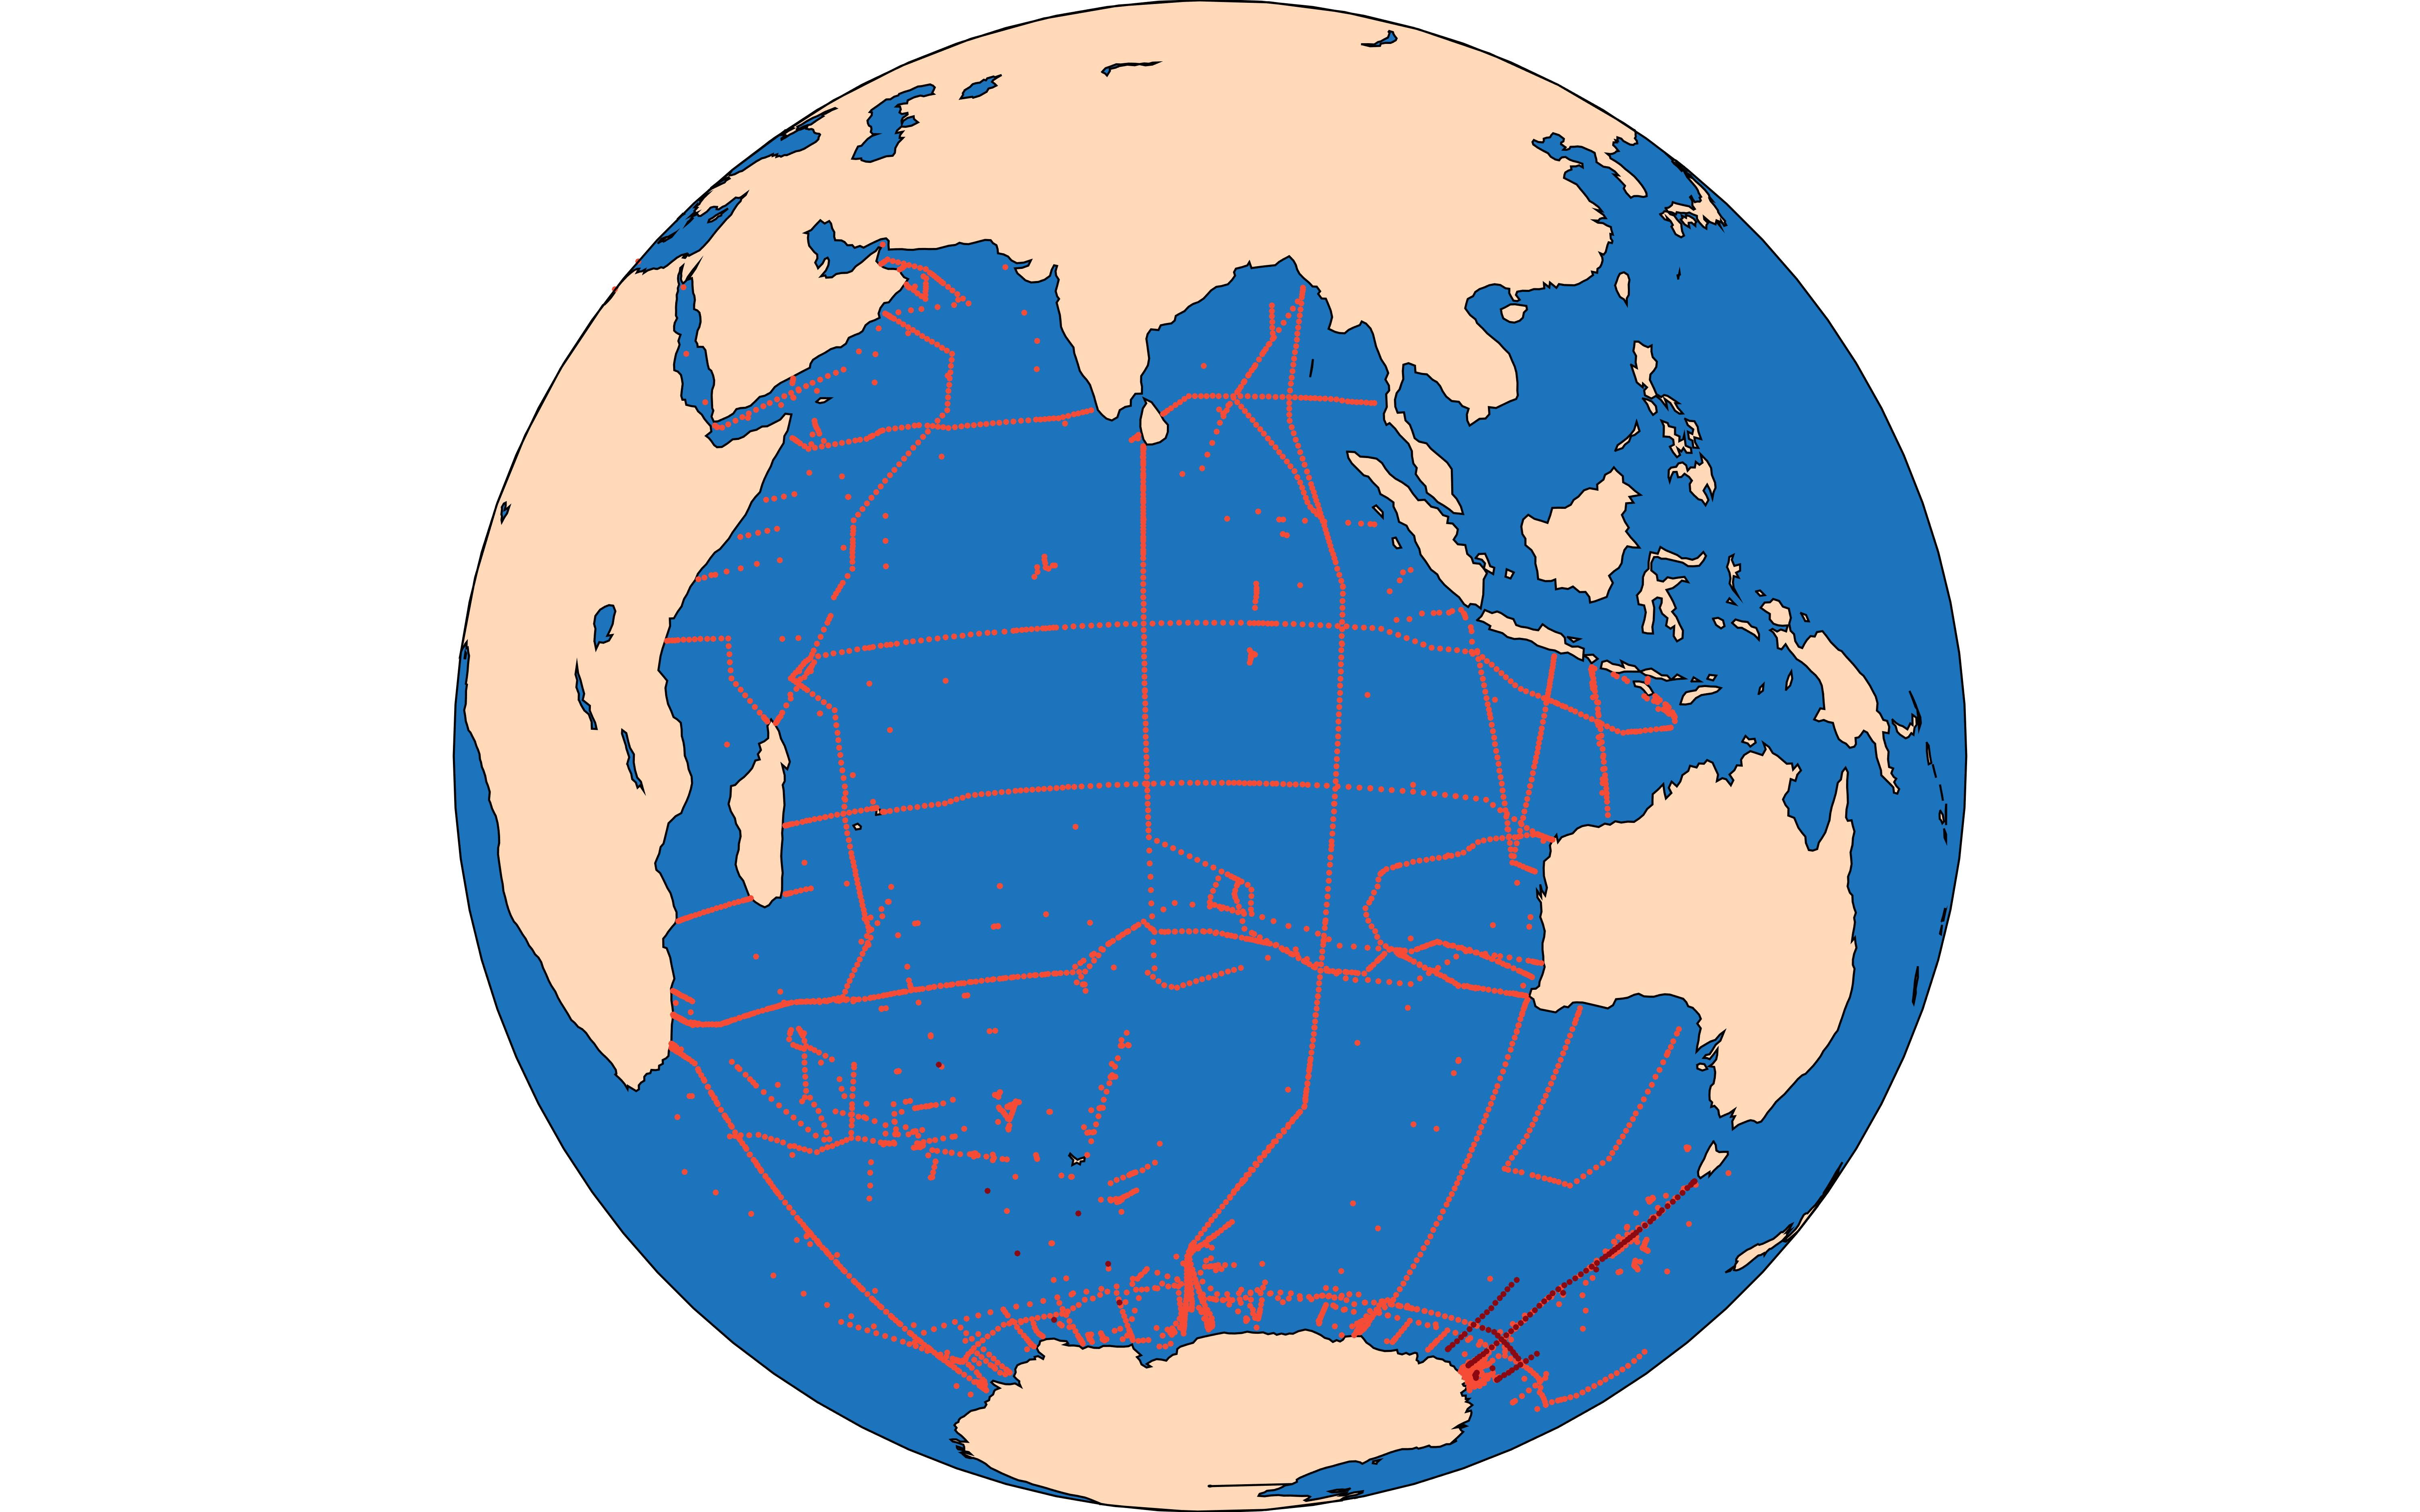 GLODAPv2.2020 Indian Map